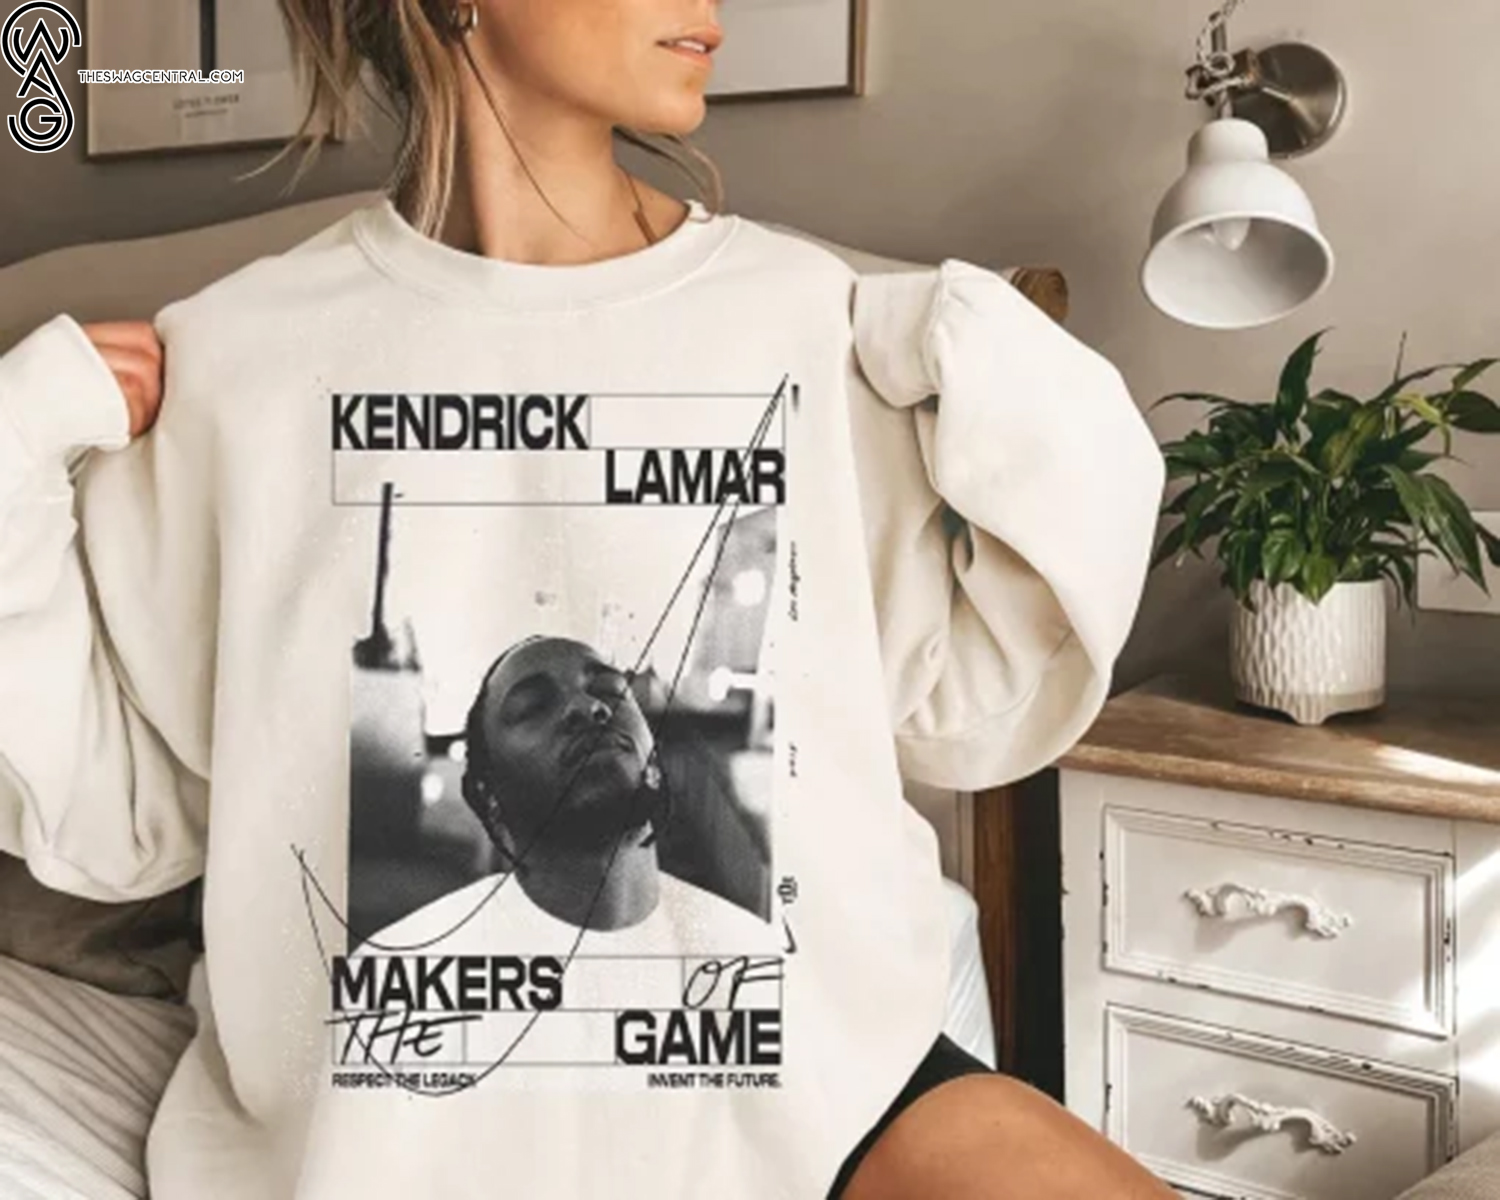 Kendrick Lamar Makers of the Game Shirt